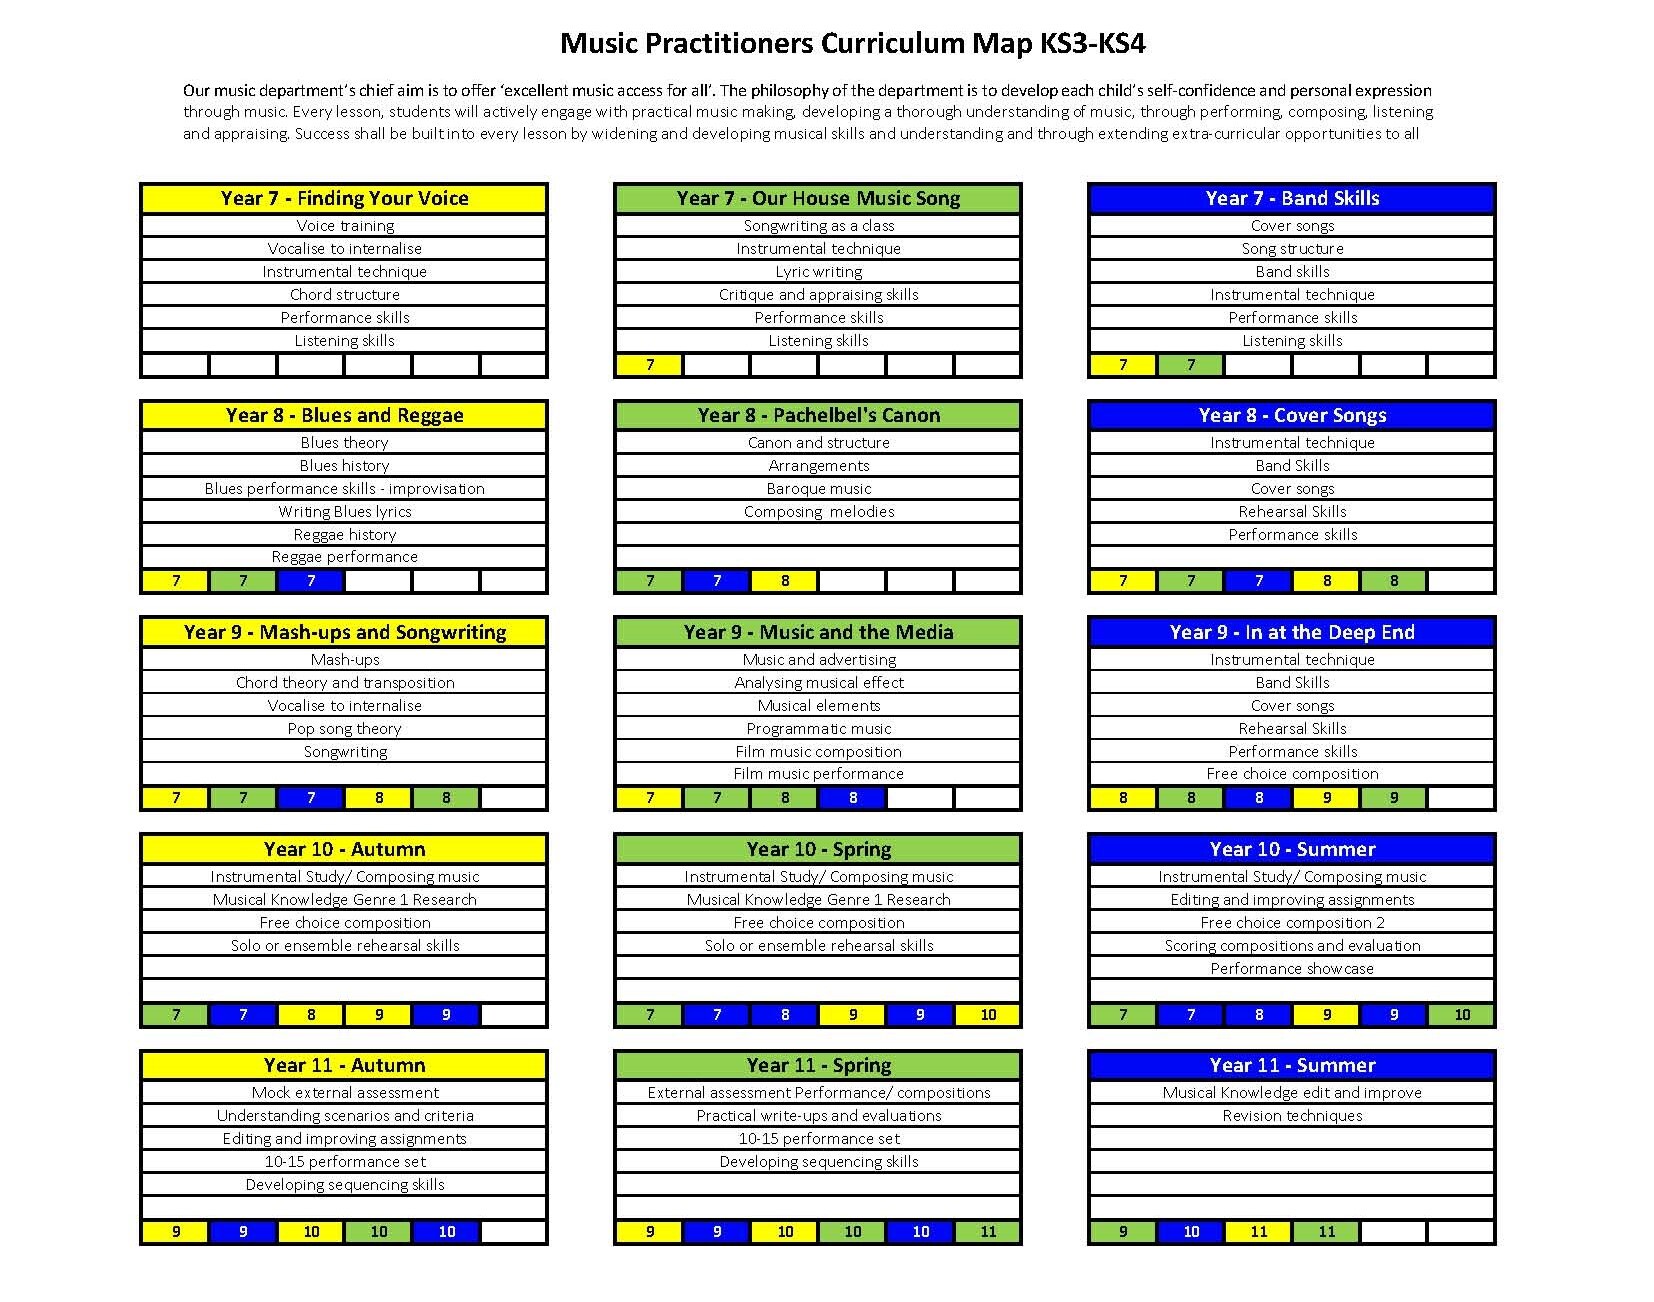 Ks3 4 curriculum map music practitioner